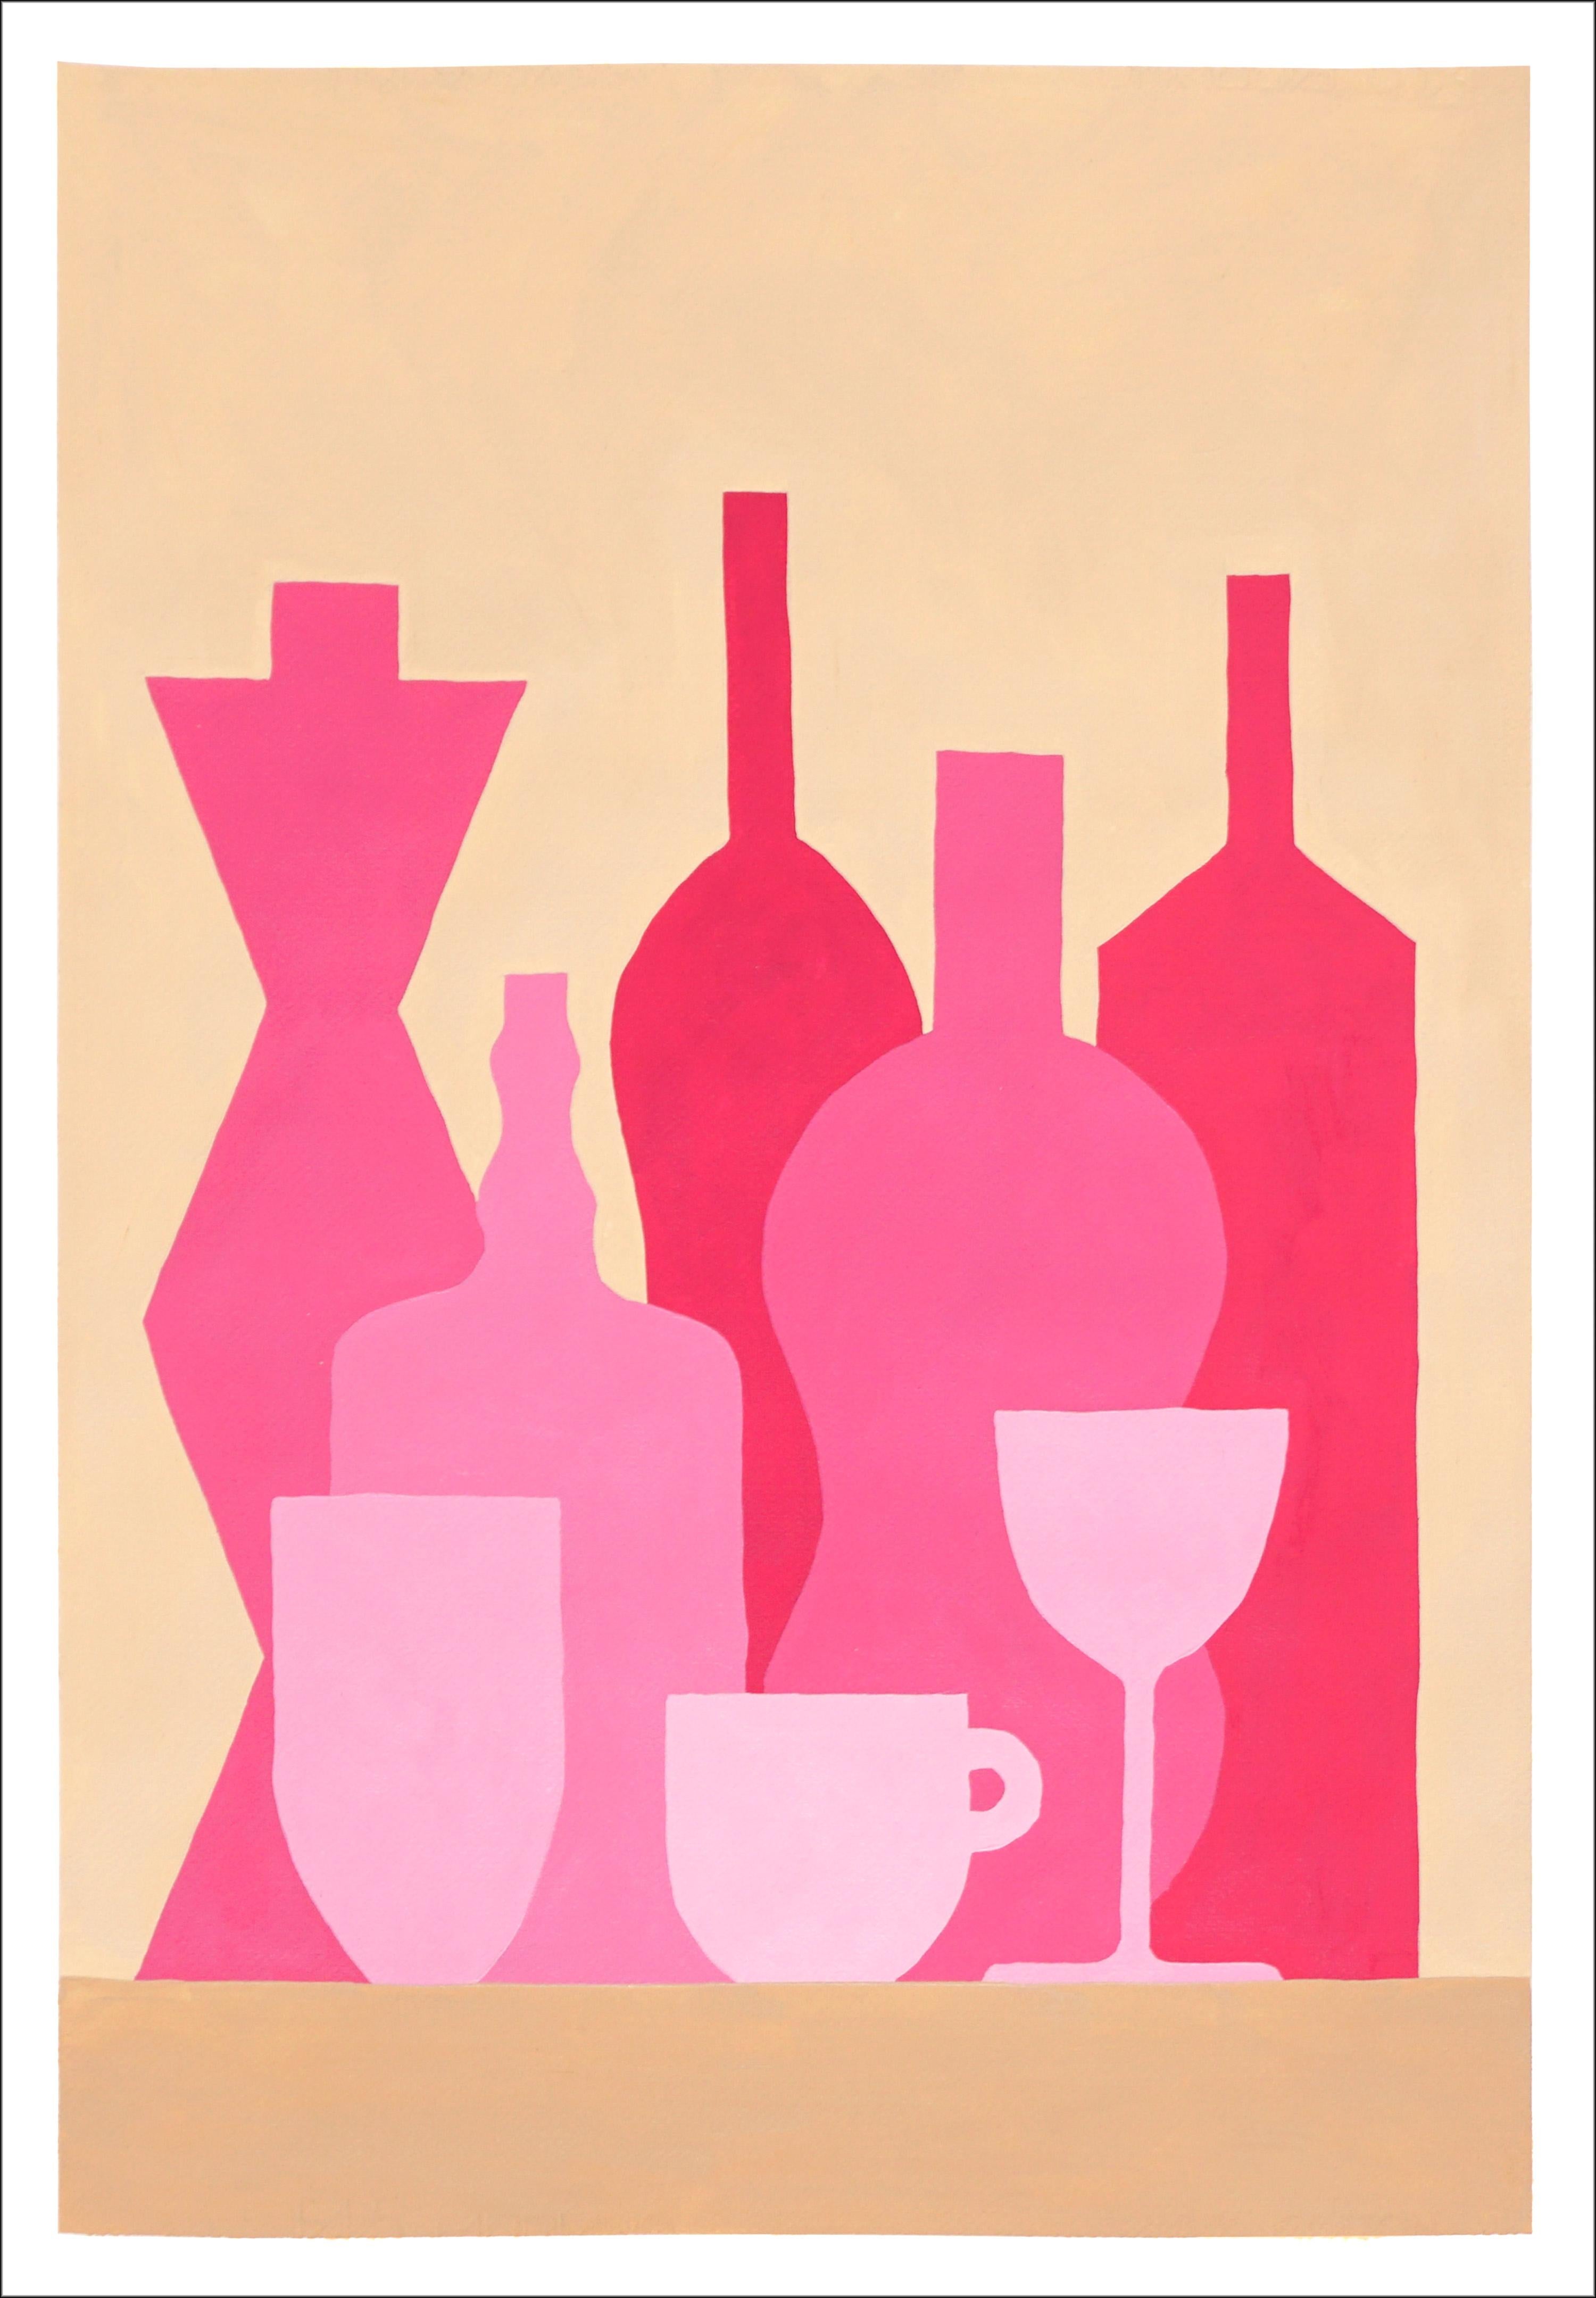 Affiche de bouteille rose, nature morte moderne, transparents aux silhouettes, fond brun clair